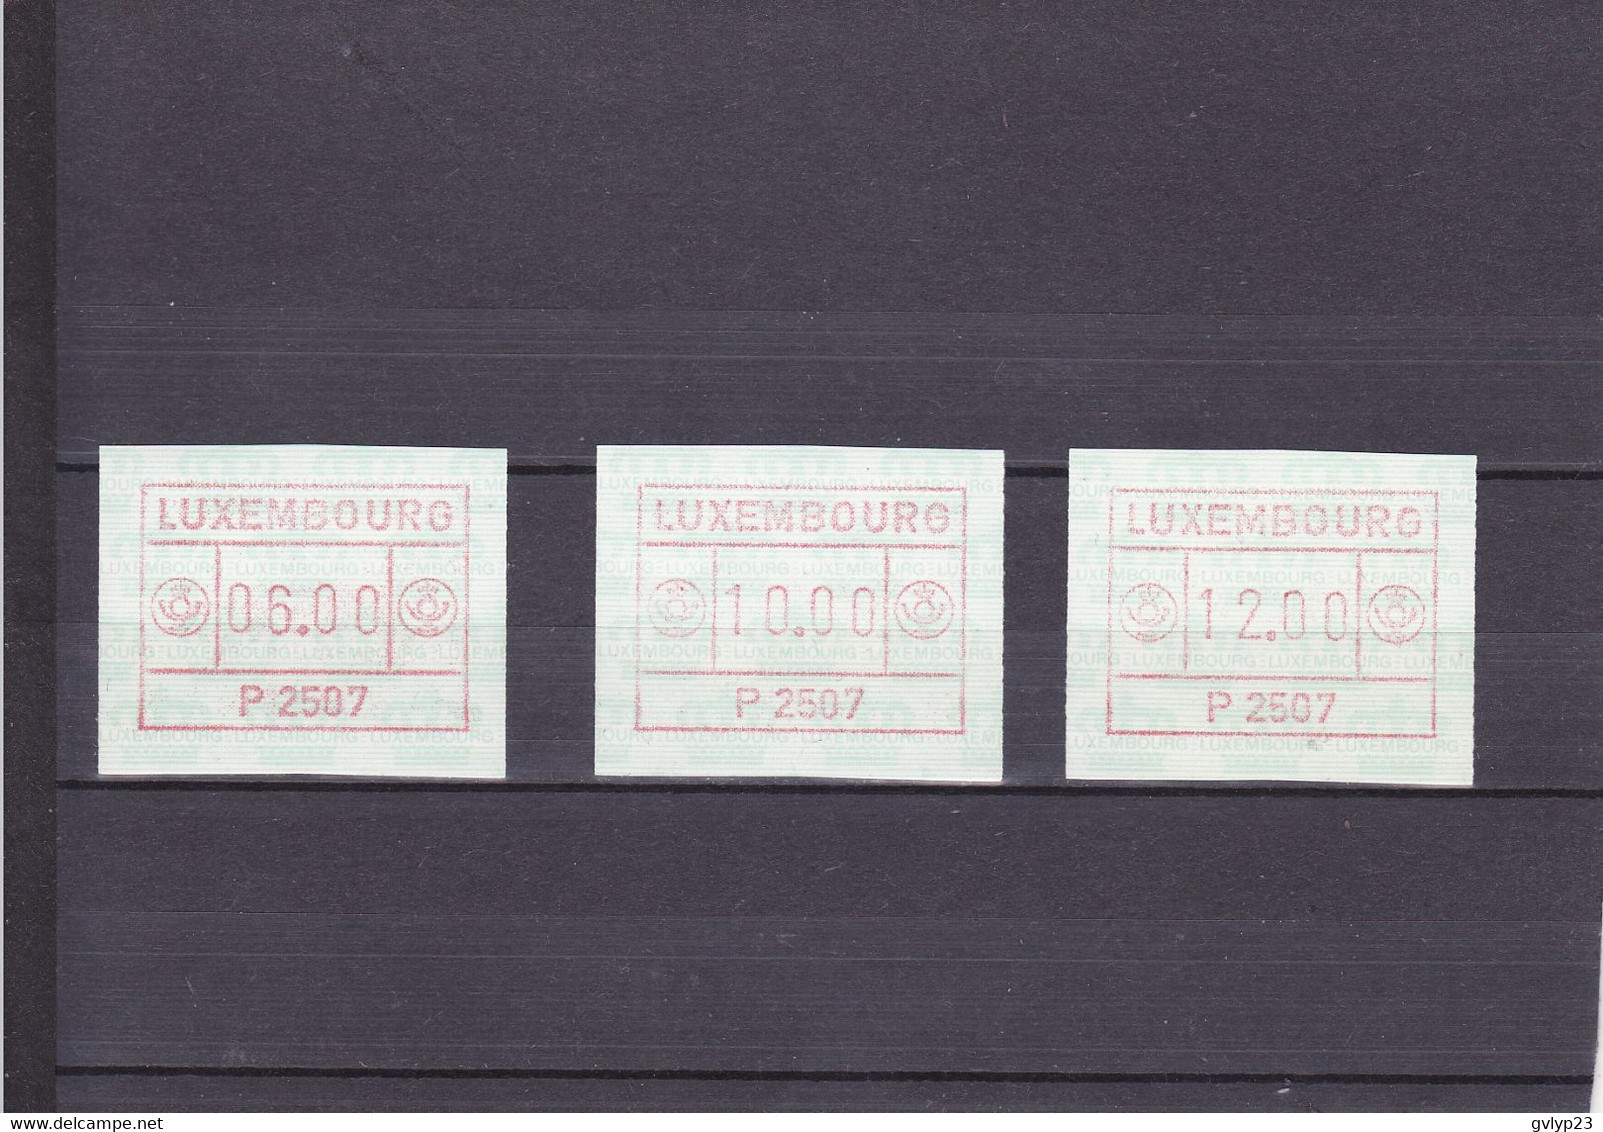 TIMBRES DE DISTRIBUTEURS/UNE SéRIE DE 3 VALEURS/6F, 10F, 12F/ N°1 YVERT ET TELLIER 1986 - Automatenmarken